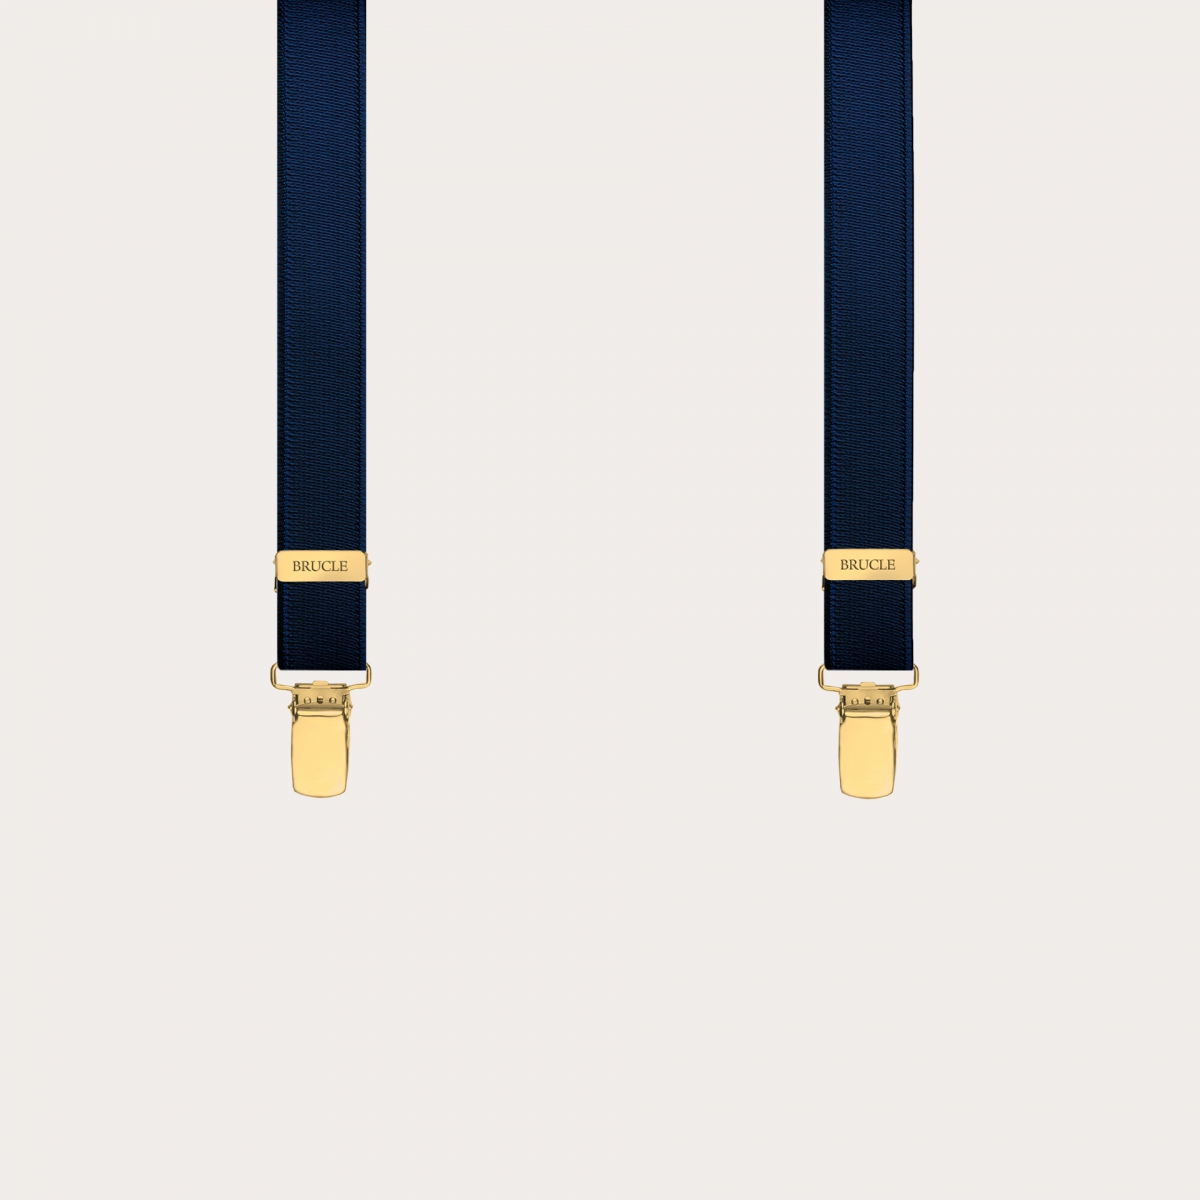 Dünne elastische Hosenträger in Y-Form mit goldenen Clips, Satinblau